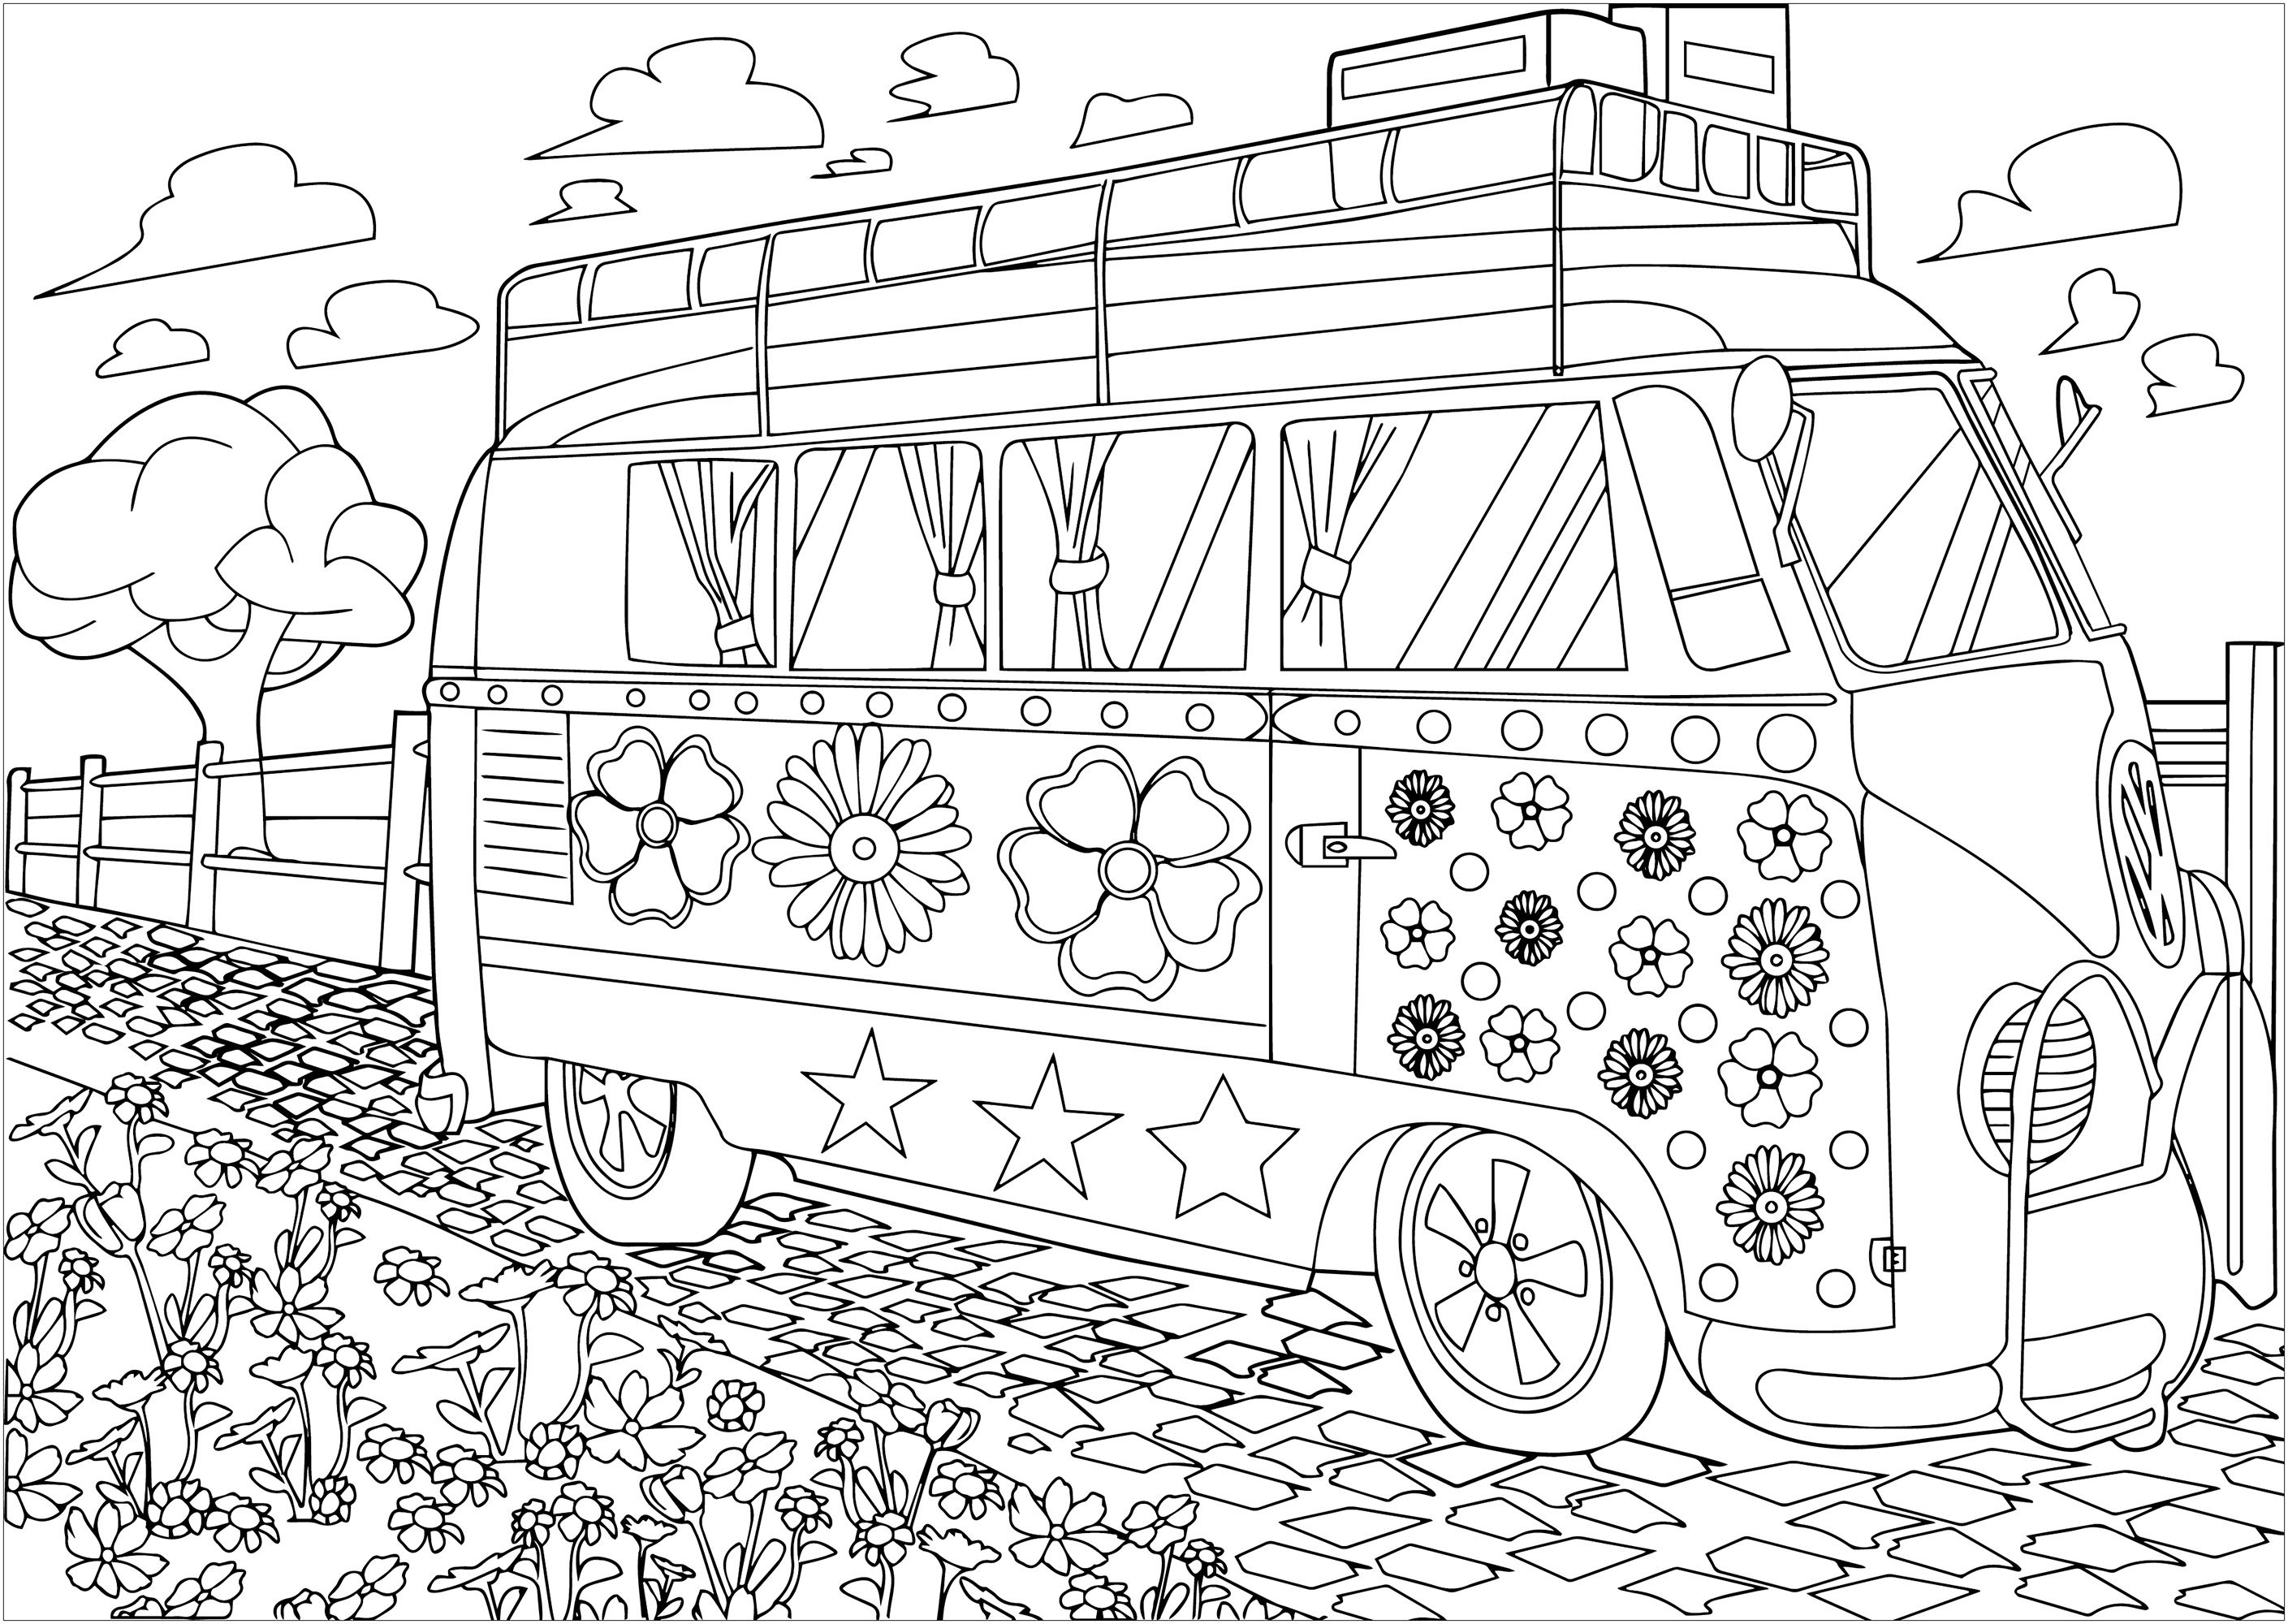 A combi Volkswagen hippy de Woodstock a cores. A Volkswagen combi, com a sua pintura colorida e símbolos de paz, tornou-se o símbolo móvel da contracultura hippie. A sua presença em Woodstock, em 1969, fez dele o ícone incontornável desta época de libertação e de música, Artista : Morgan